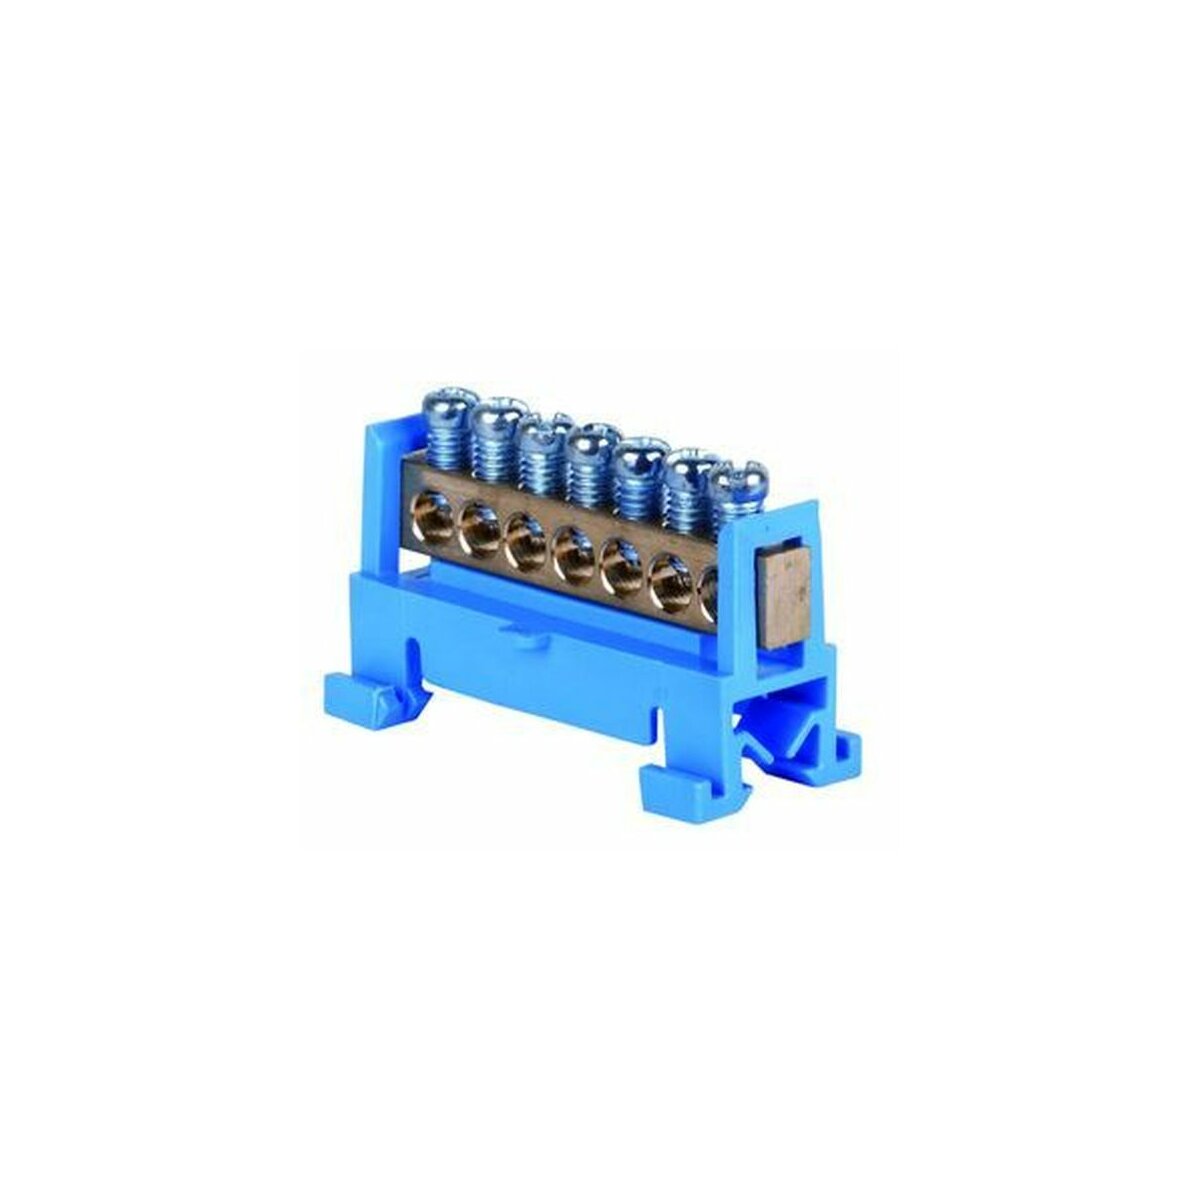 Pollmann Elektrotechnik GmbH L Nullleiterklemme N7, 7-pol.blau kaufen